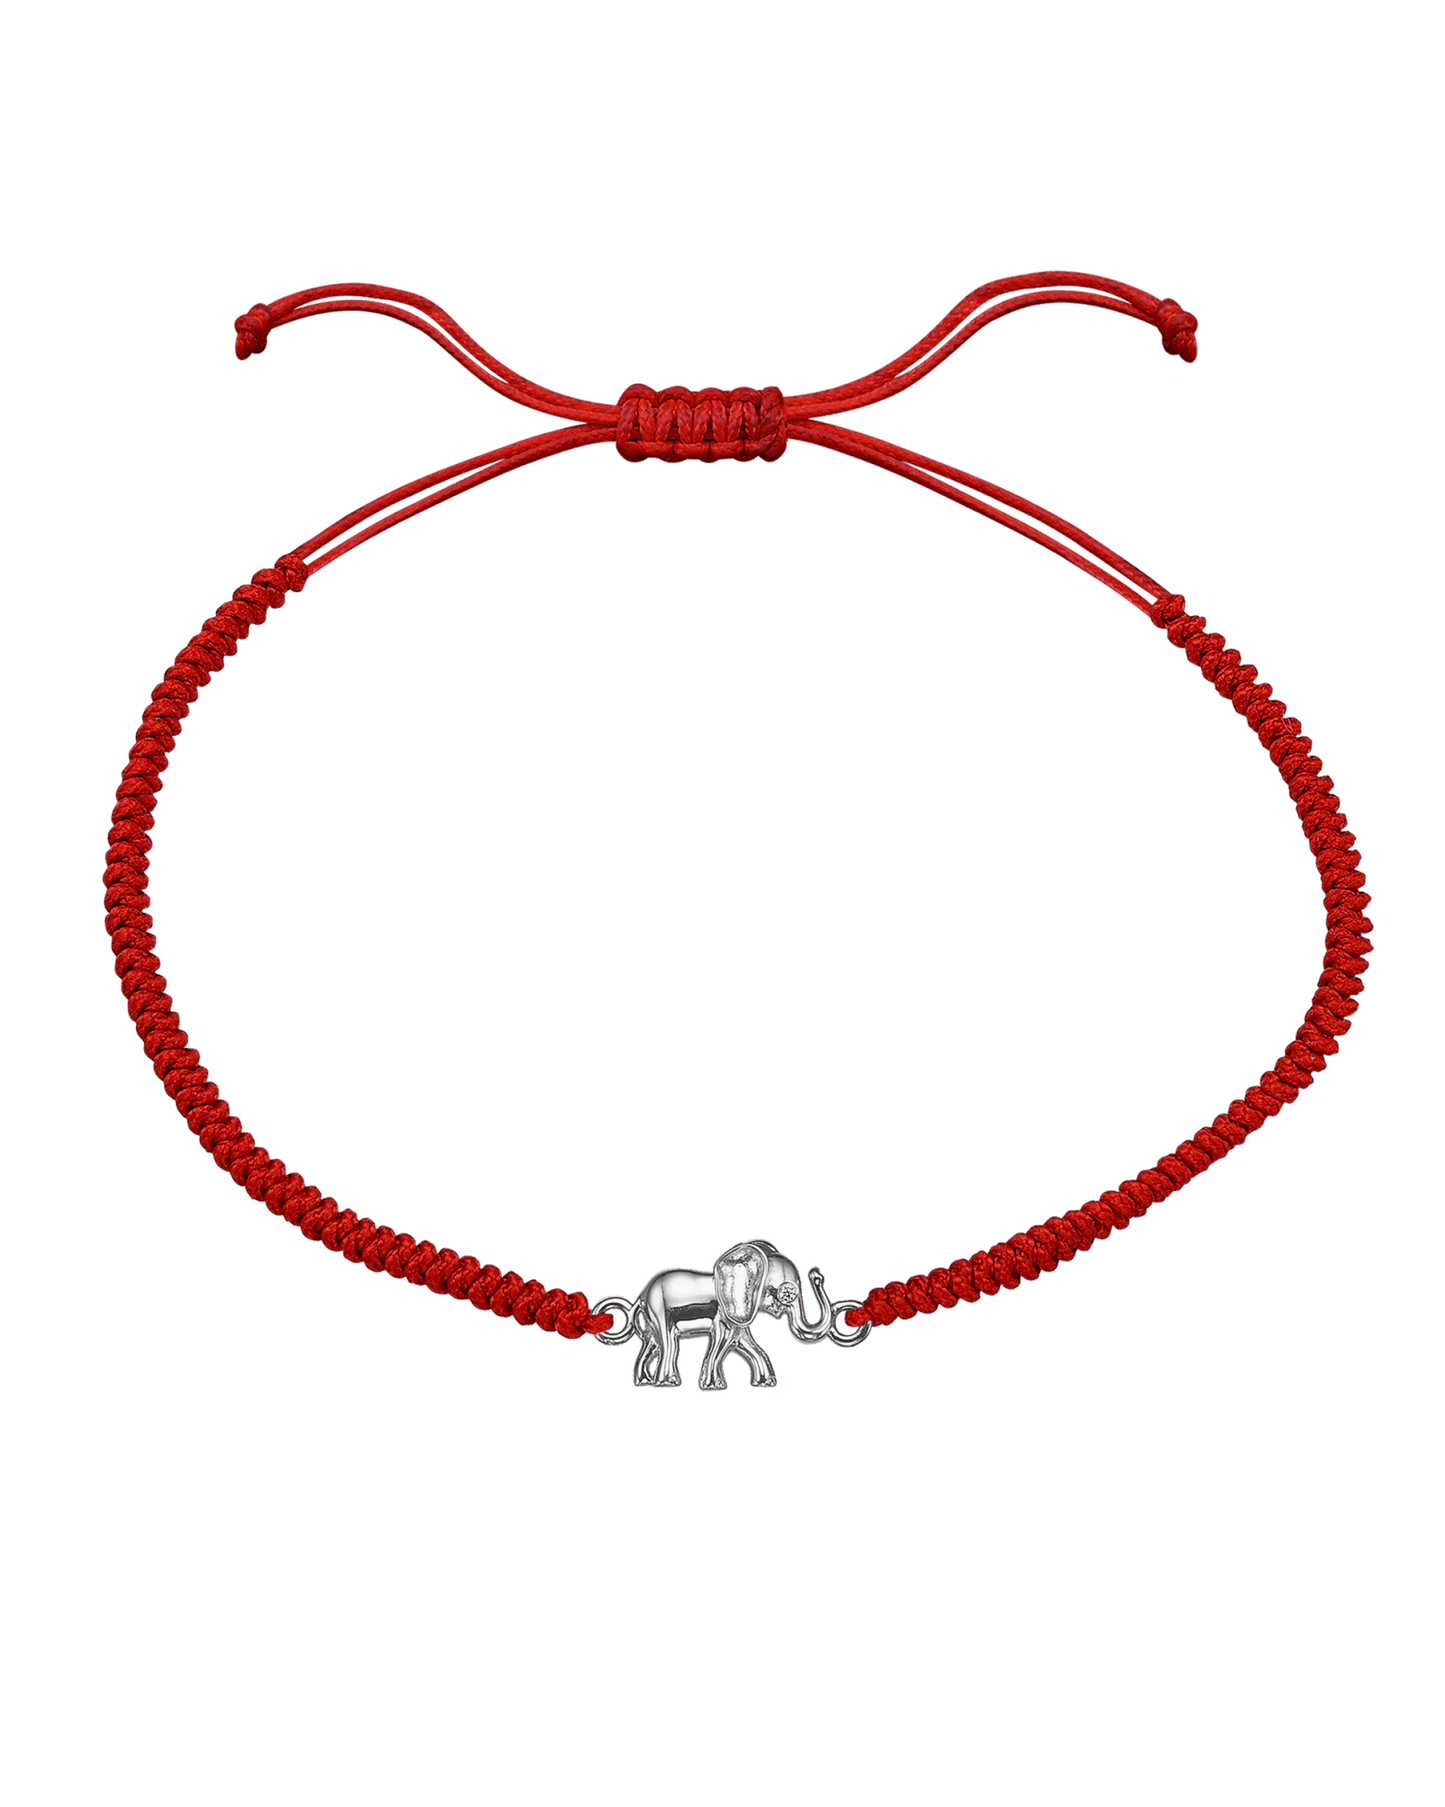 Elephant [RED] - 925 Sterling Silver Bracelets magal-dev 